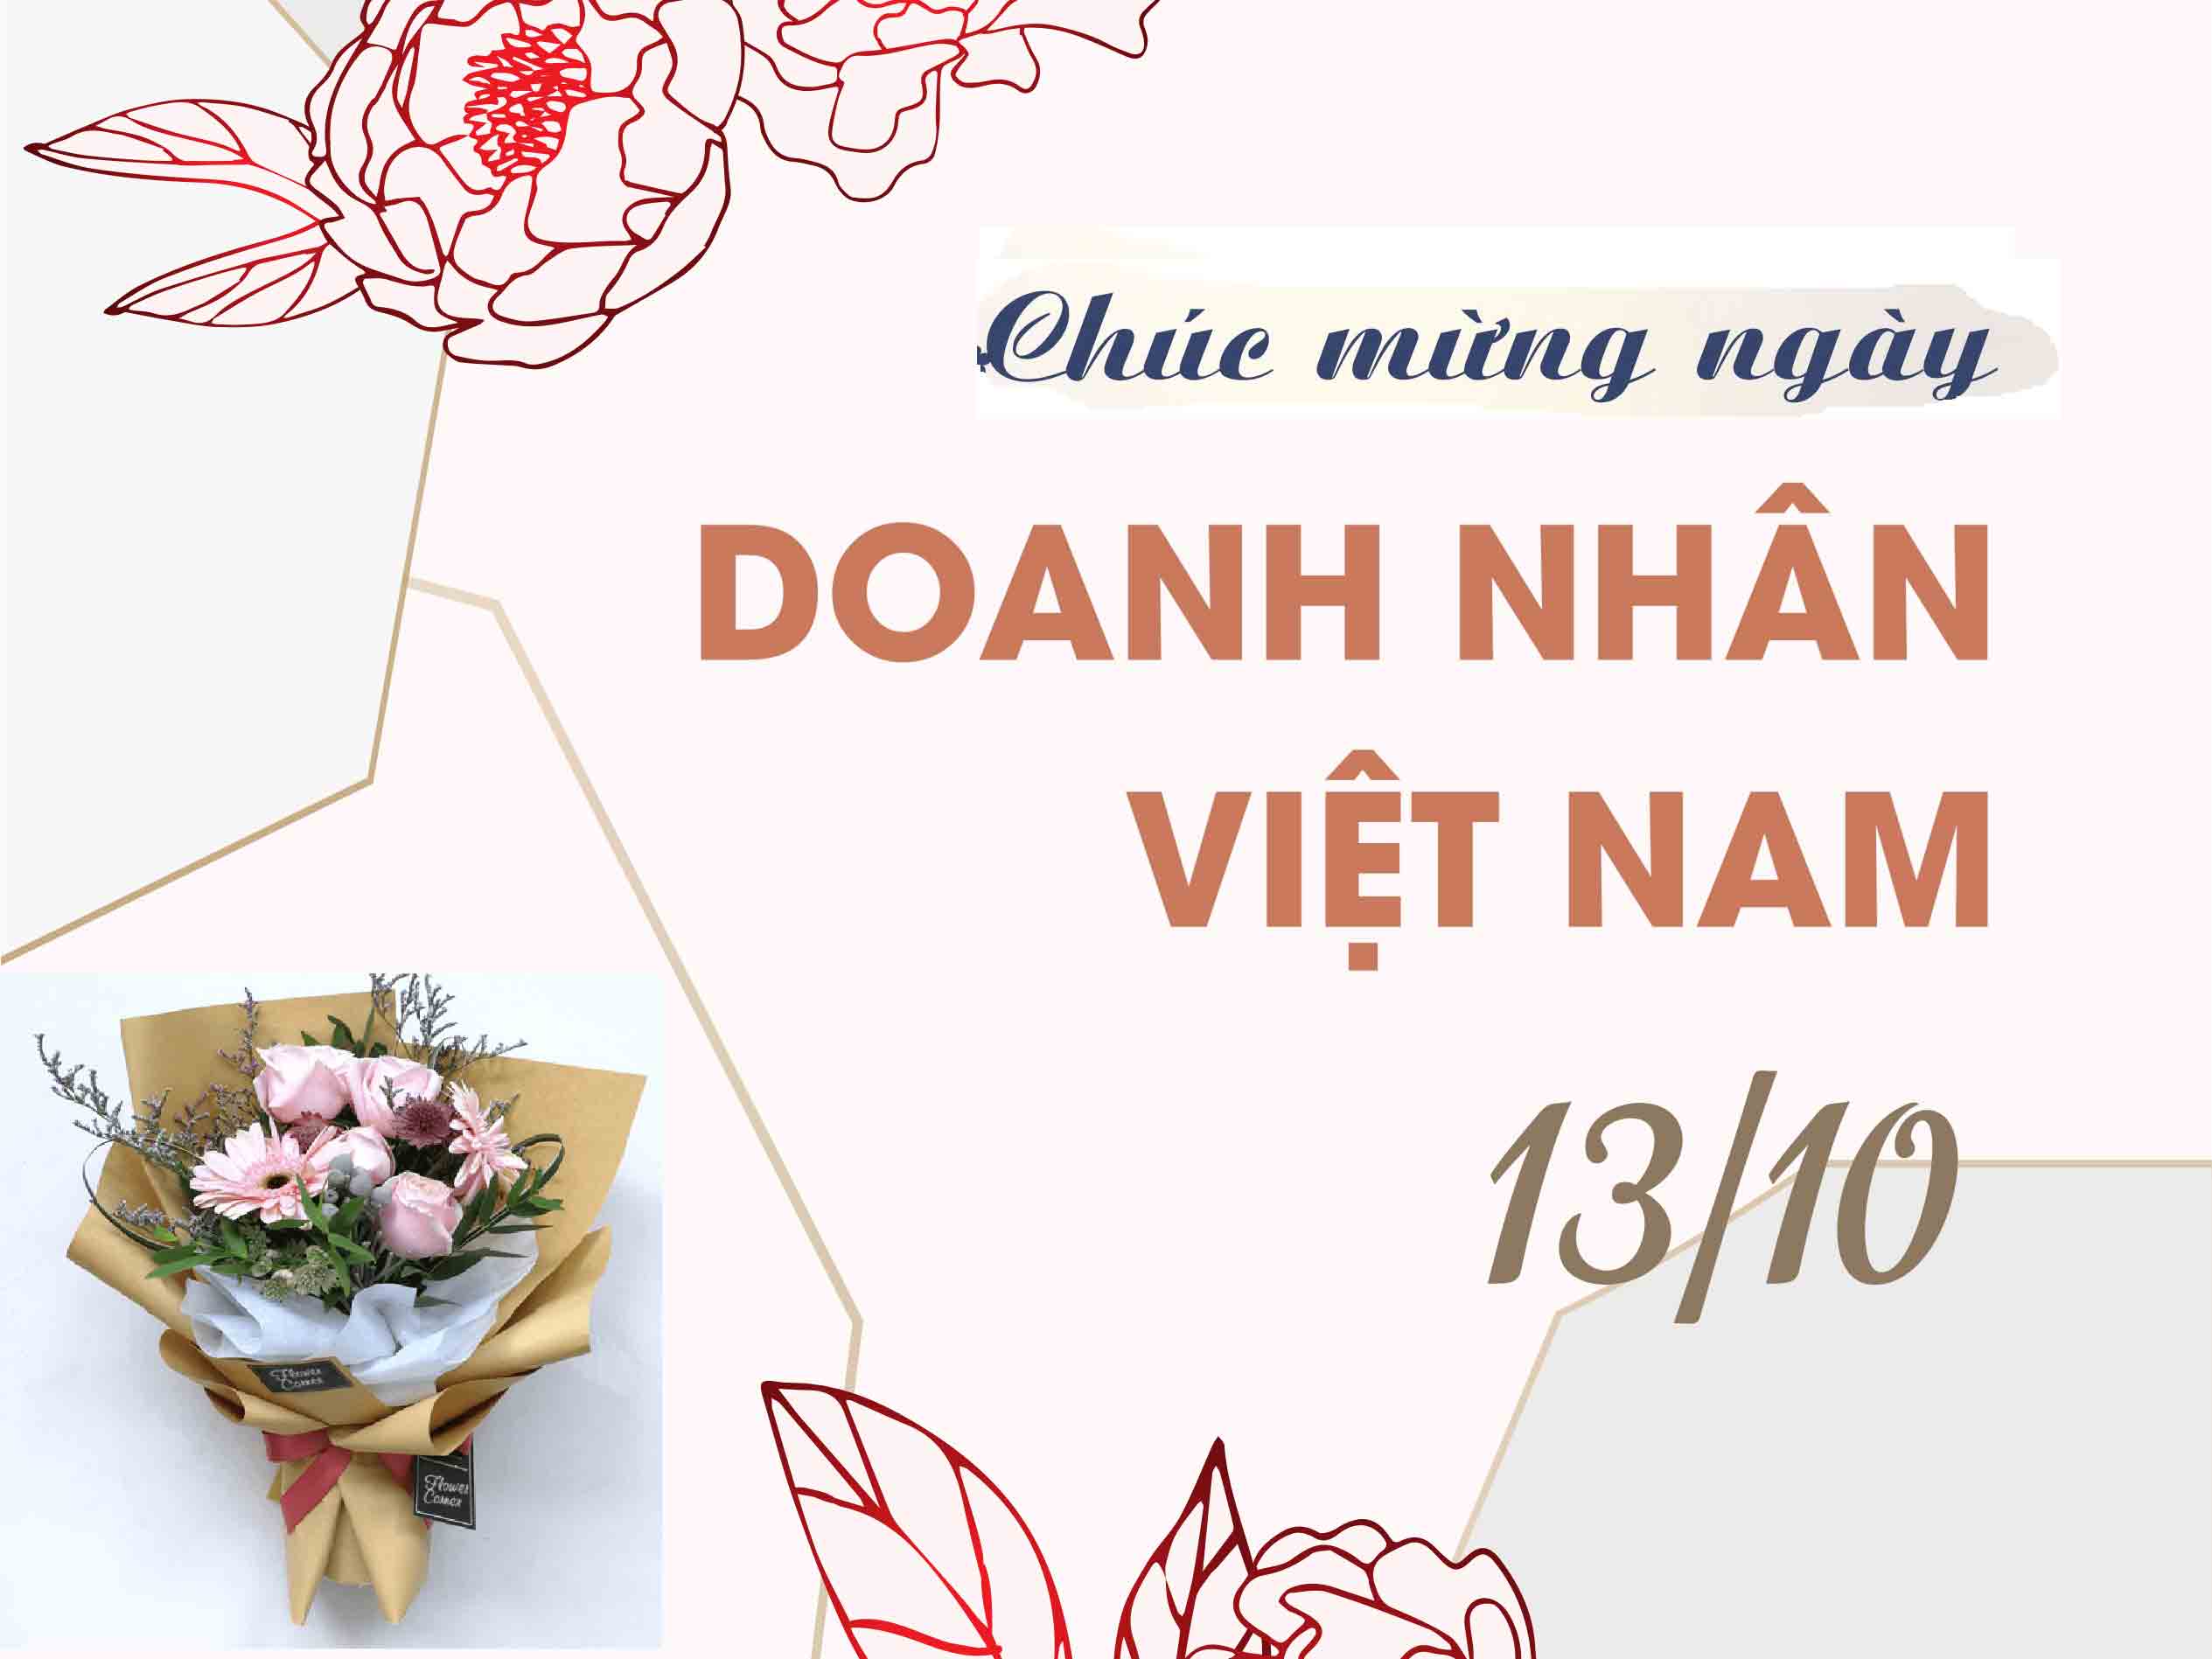 Thiệp chúc mừng Ngày Doanh nhân Việt Nam